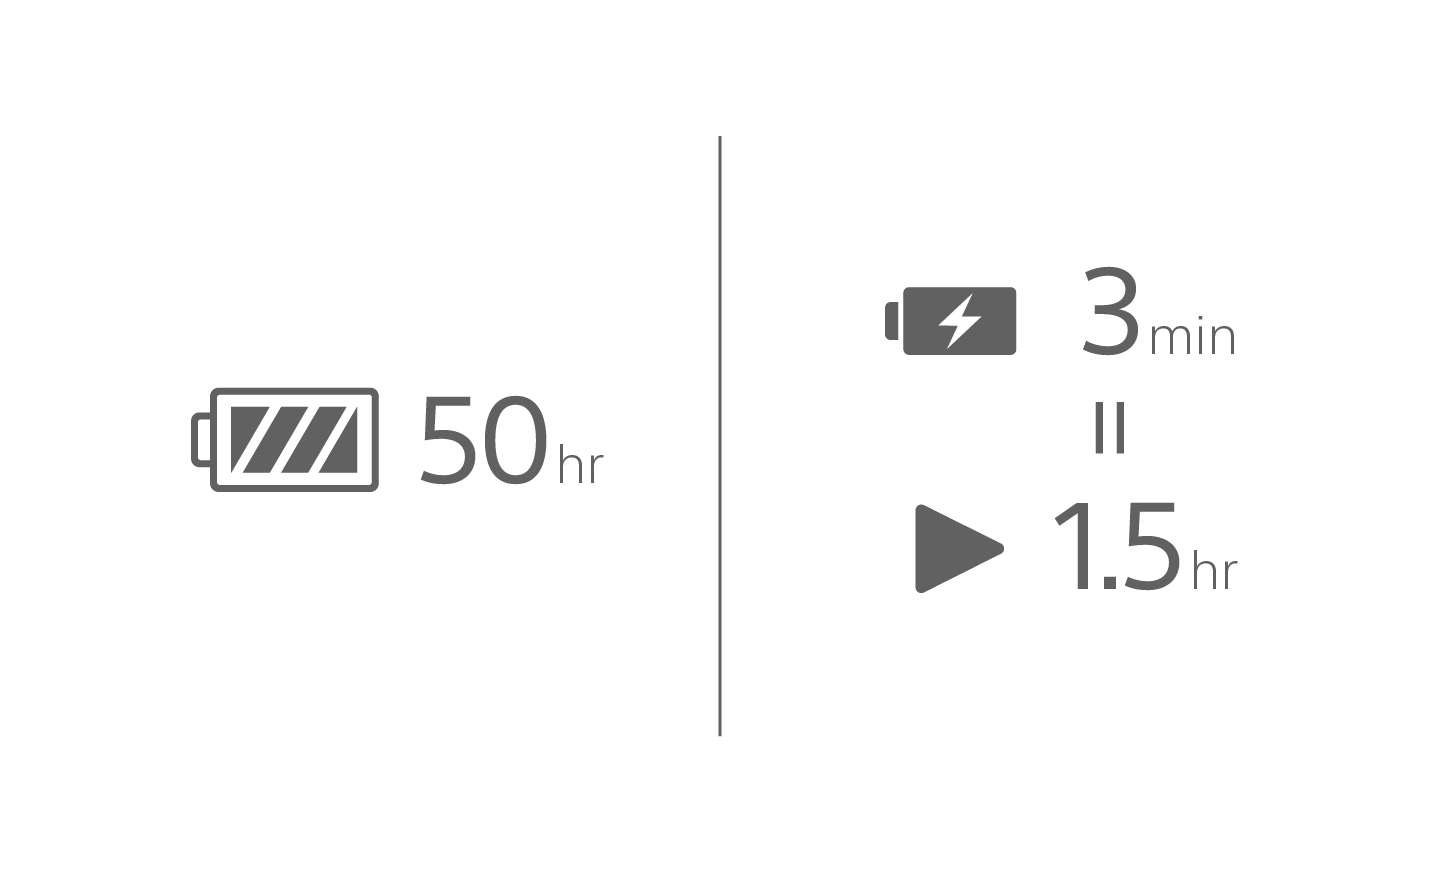 Pictogram van een batterij met de tekst 50 hr, een pictogram van een opladende batterij met de tekst 3 min boven een pictogram voor afspelen met de tekst 1 hr